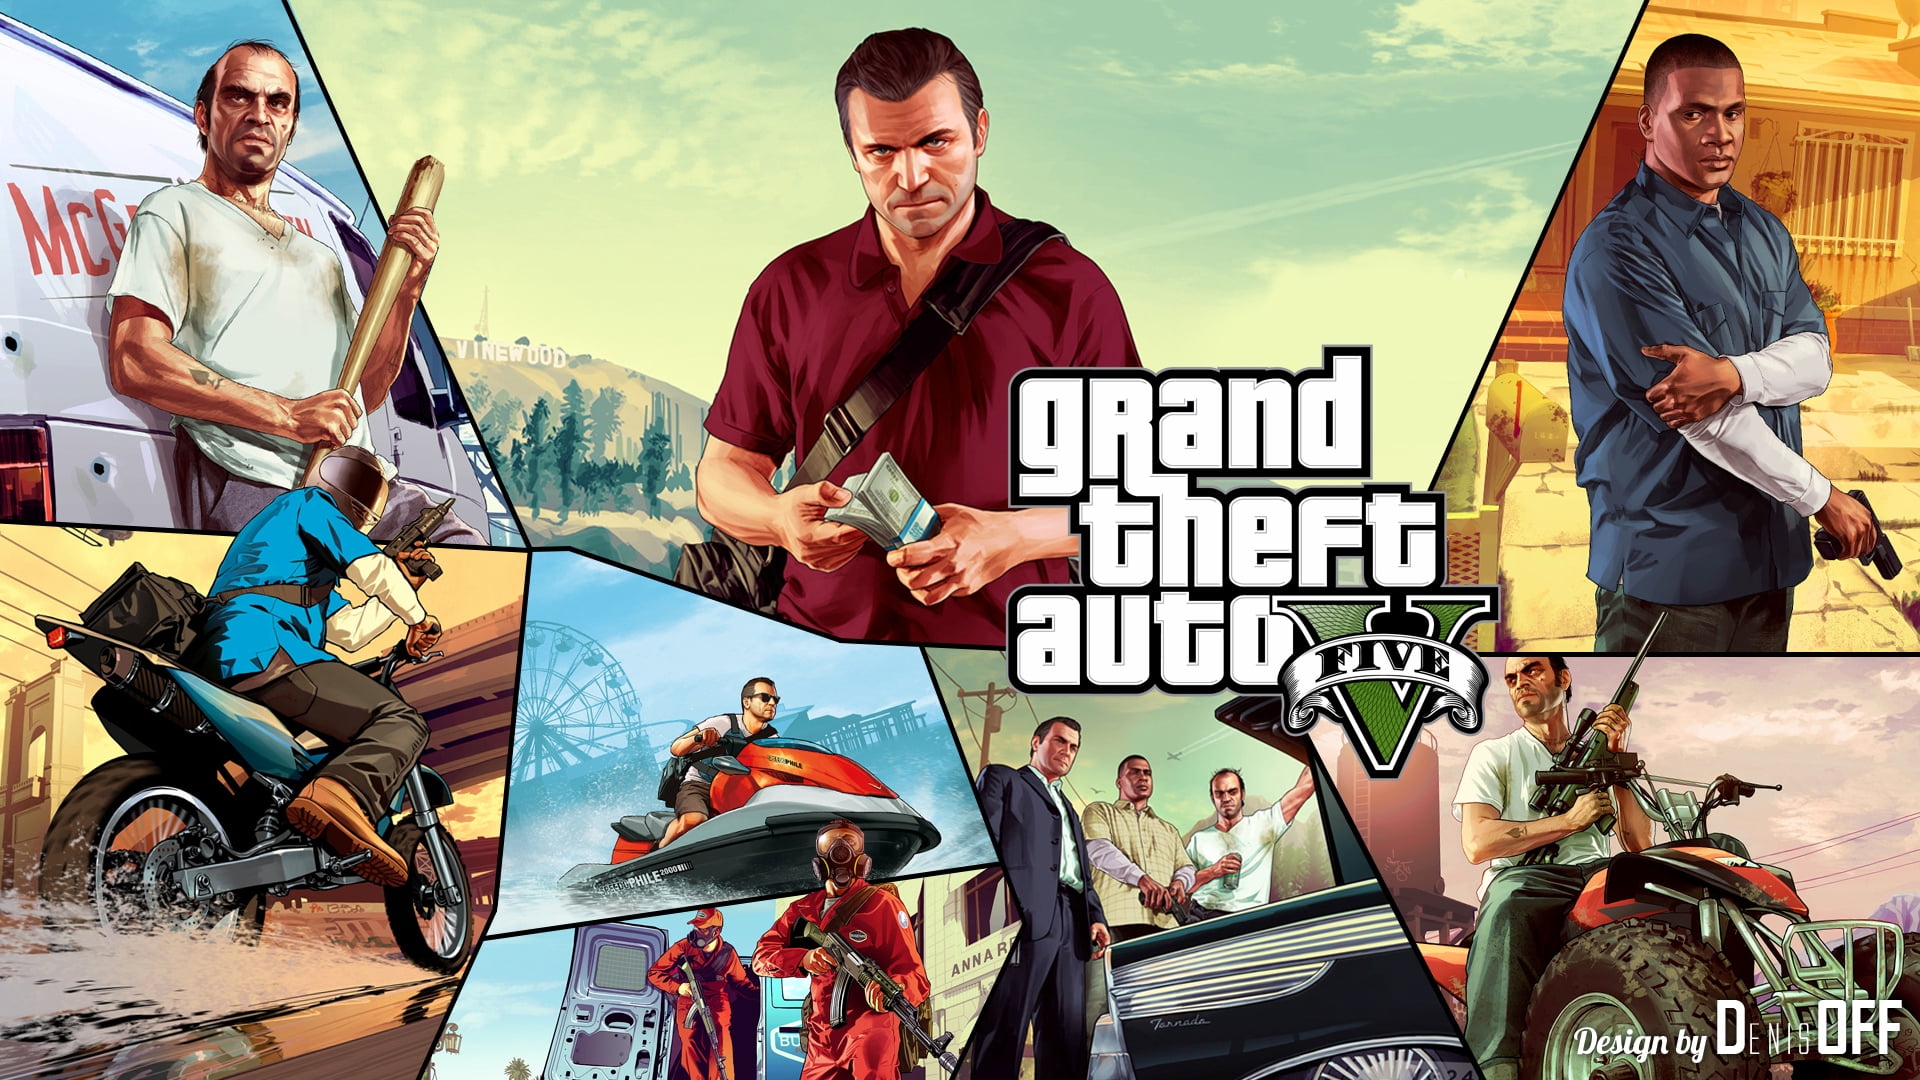 Grand Theft Auto Five digital wallpaper, gta, gta 5, 2015, heroes